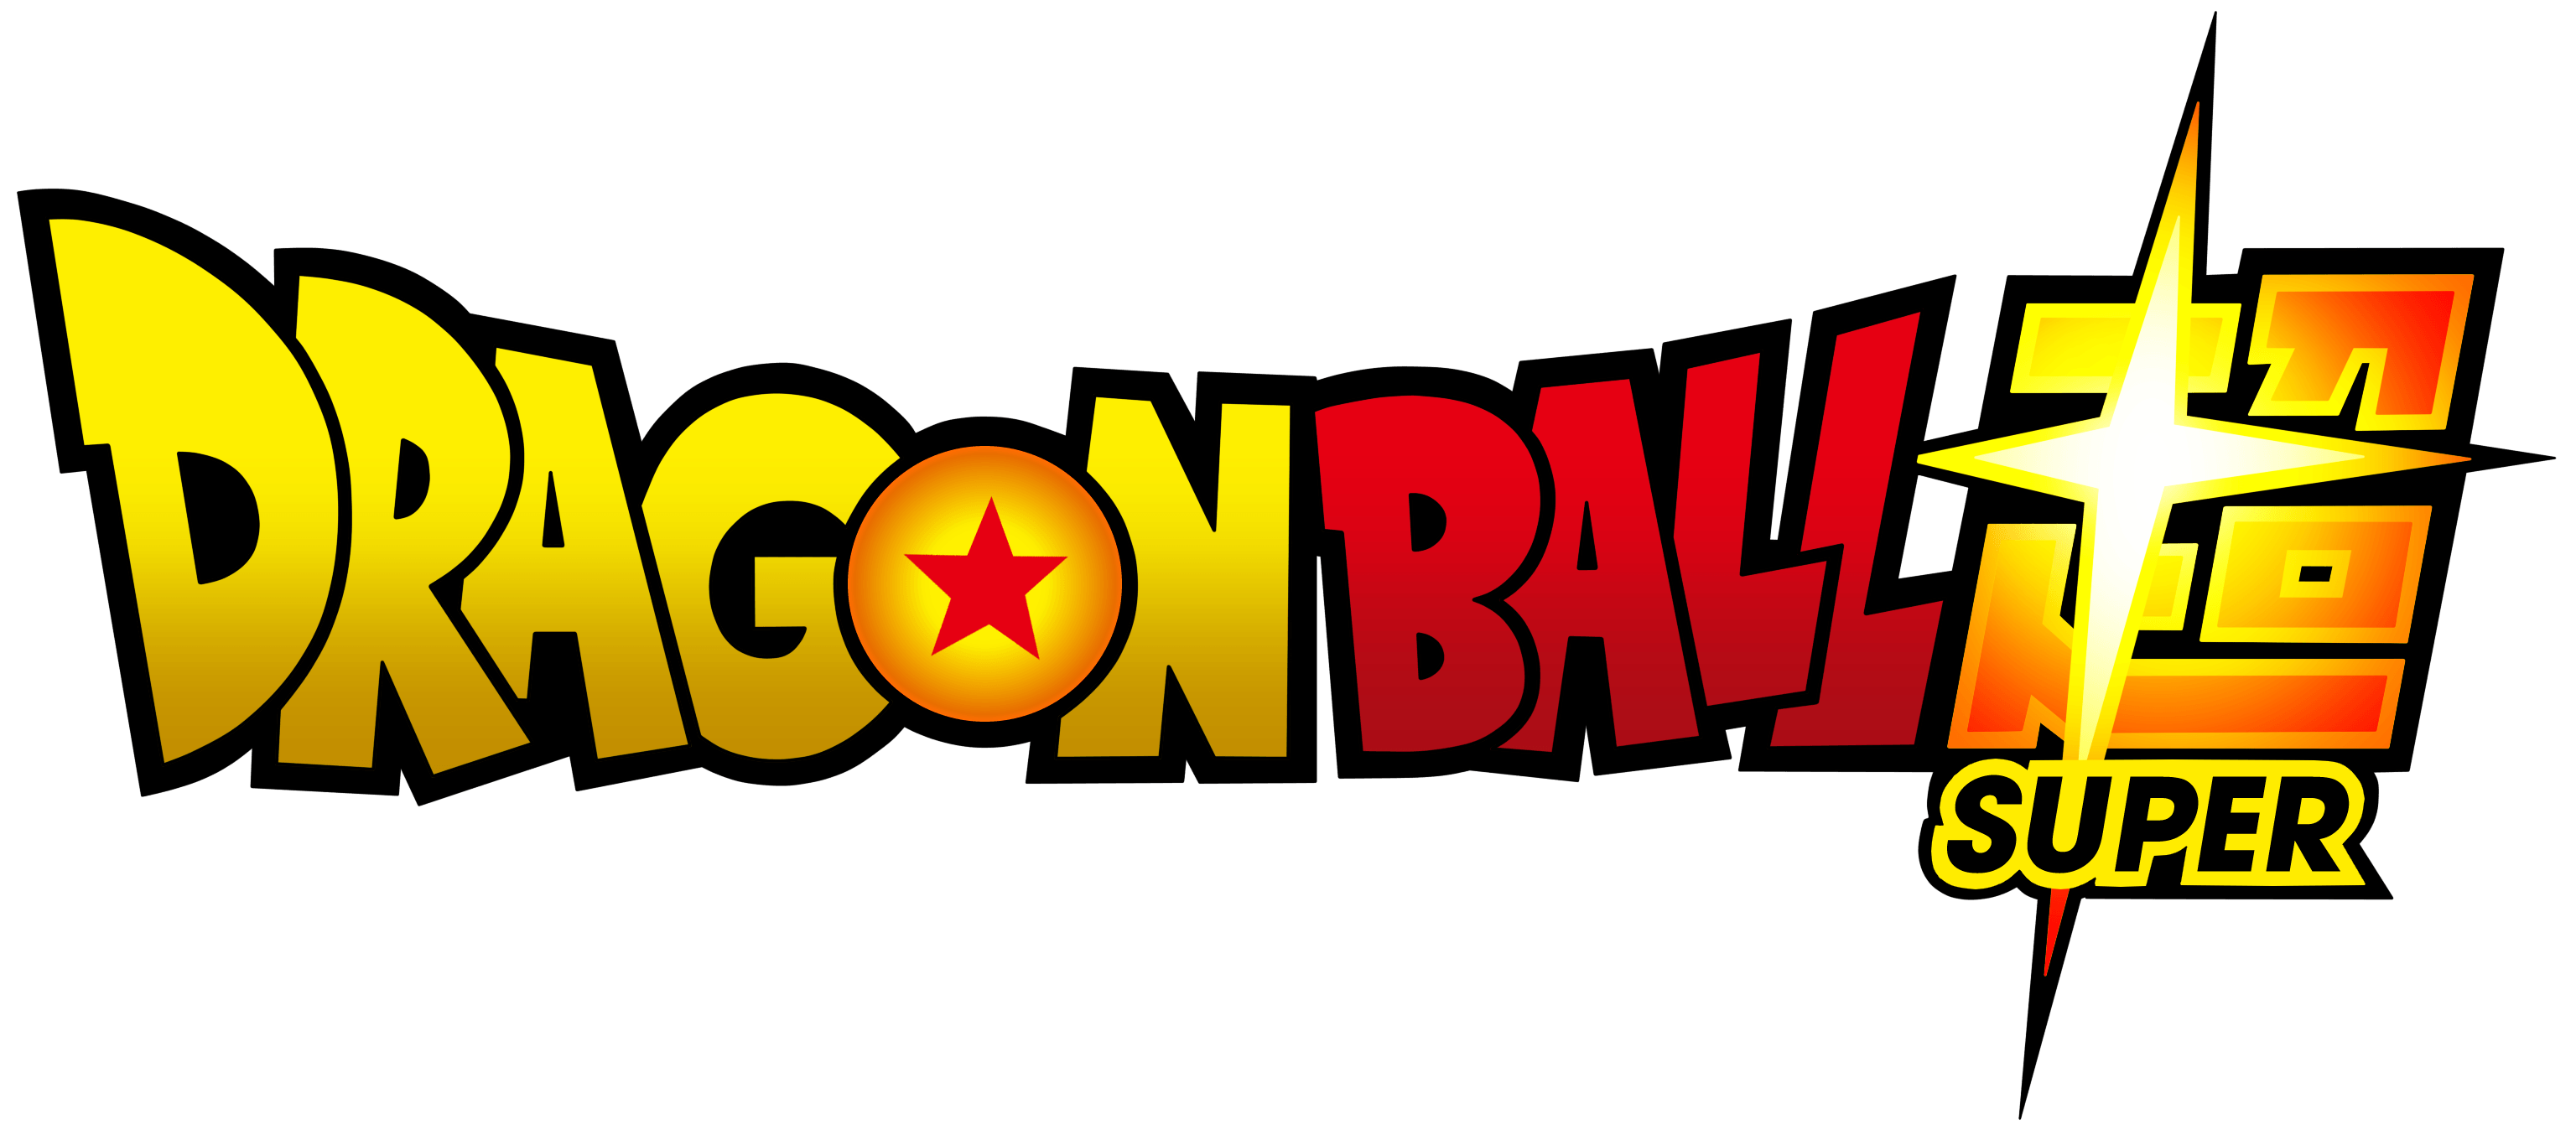 Dragon Bal Logo - Dragon ball z Logos